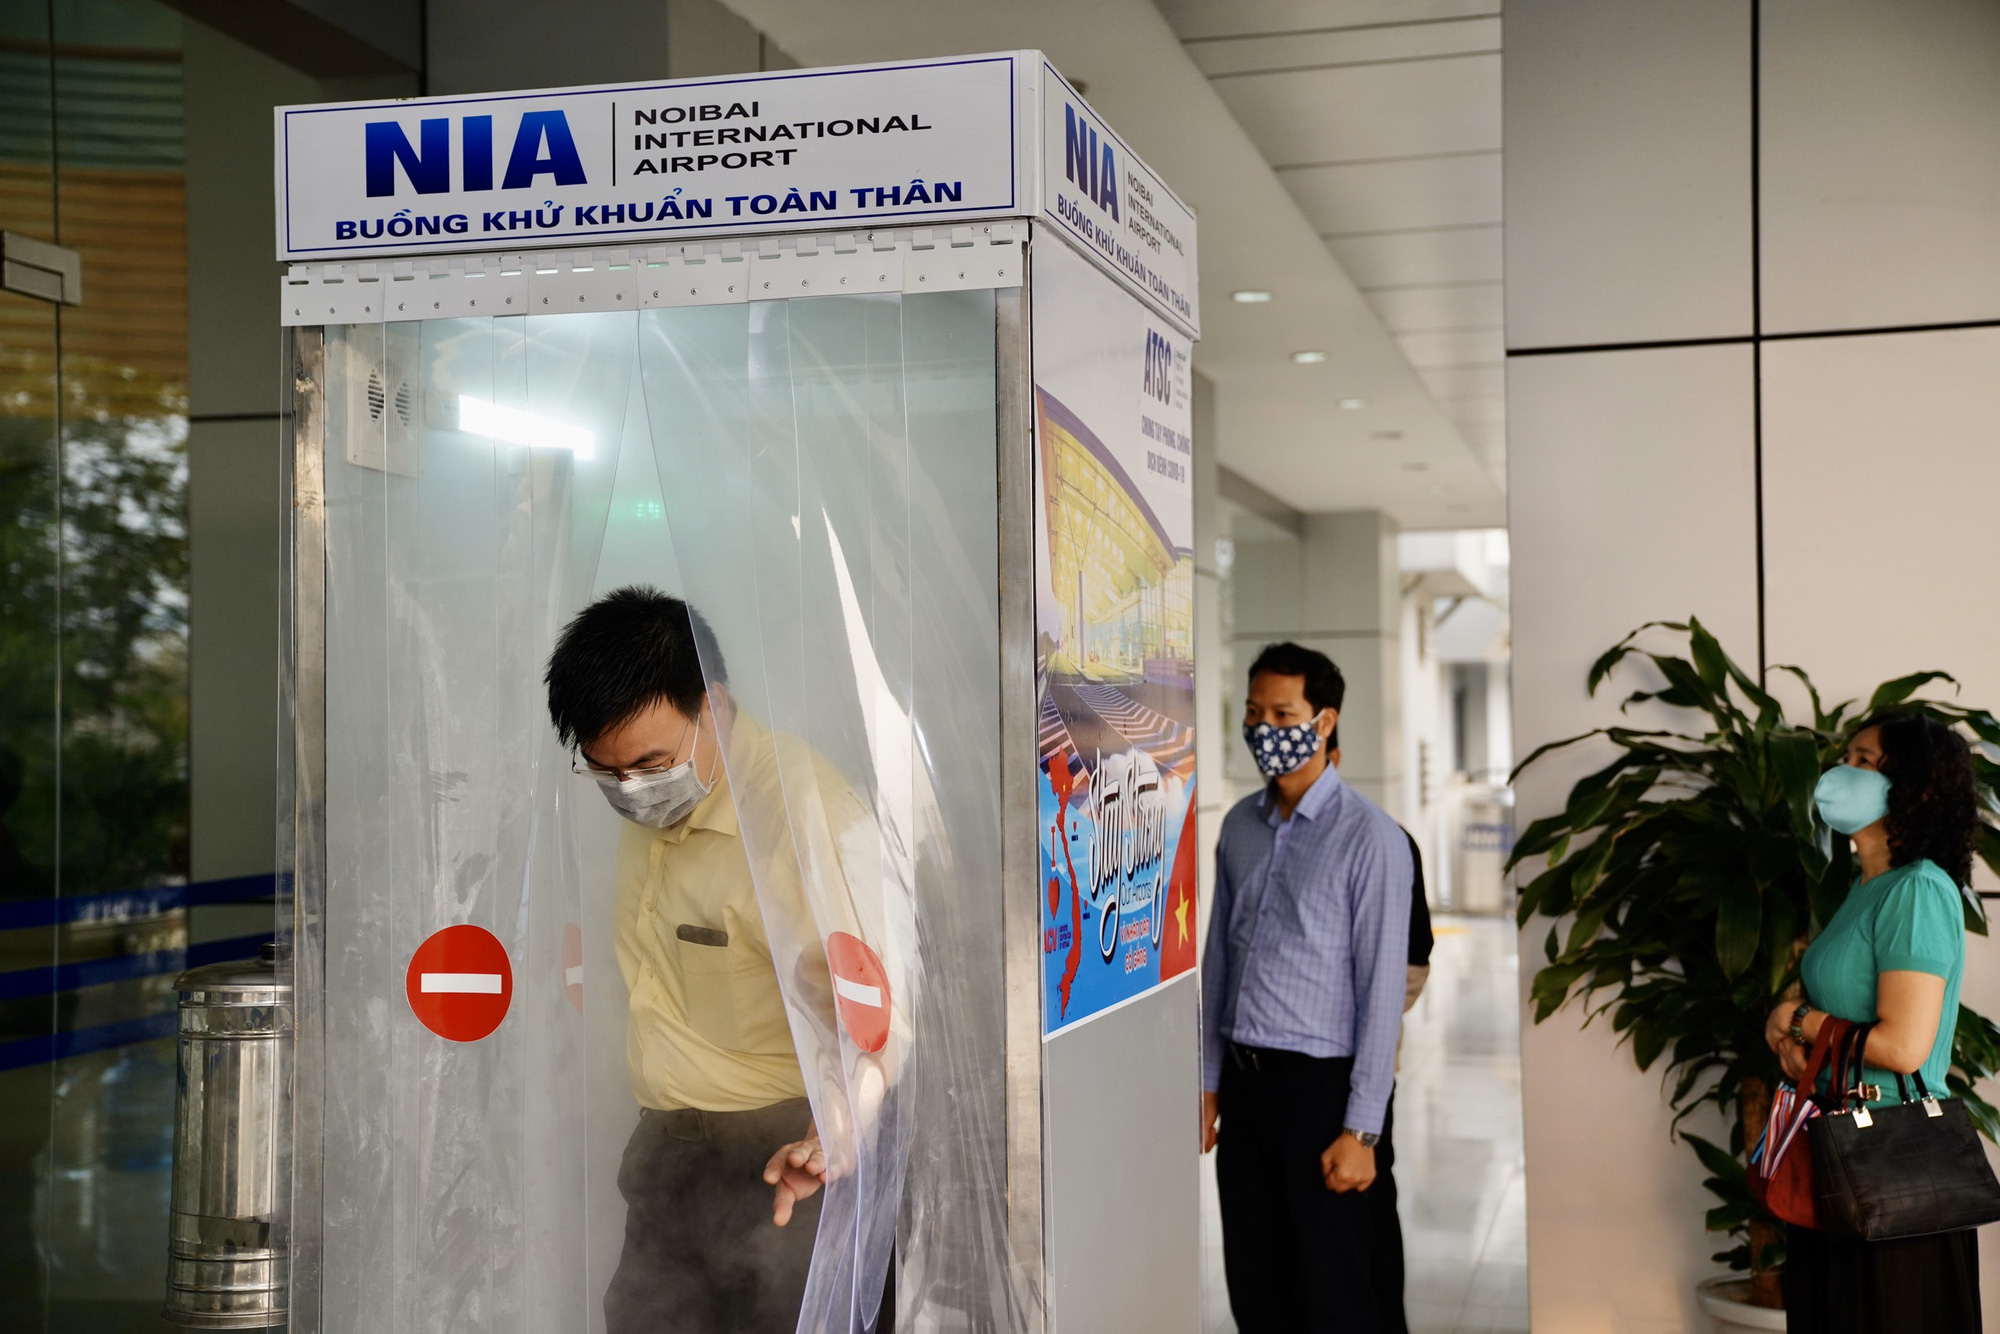 Sân bay Nội Bài thần tốc sản xuất buồng khử khuẩn toàn thân - Ảnh 7.